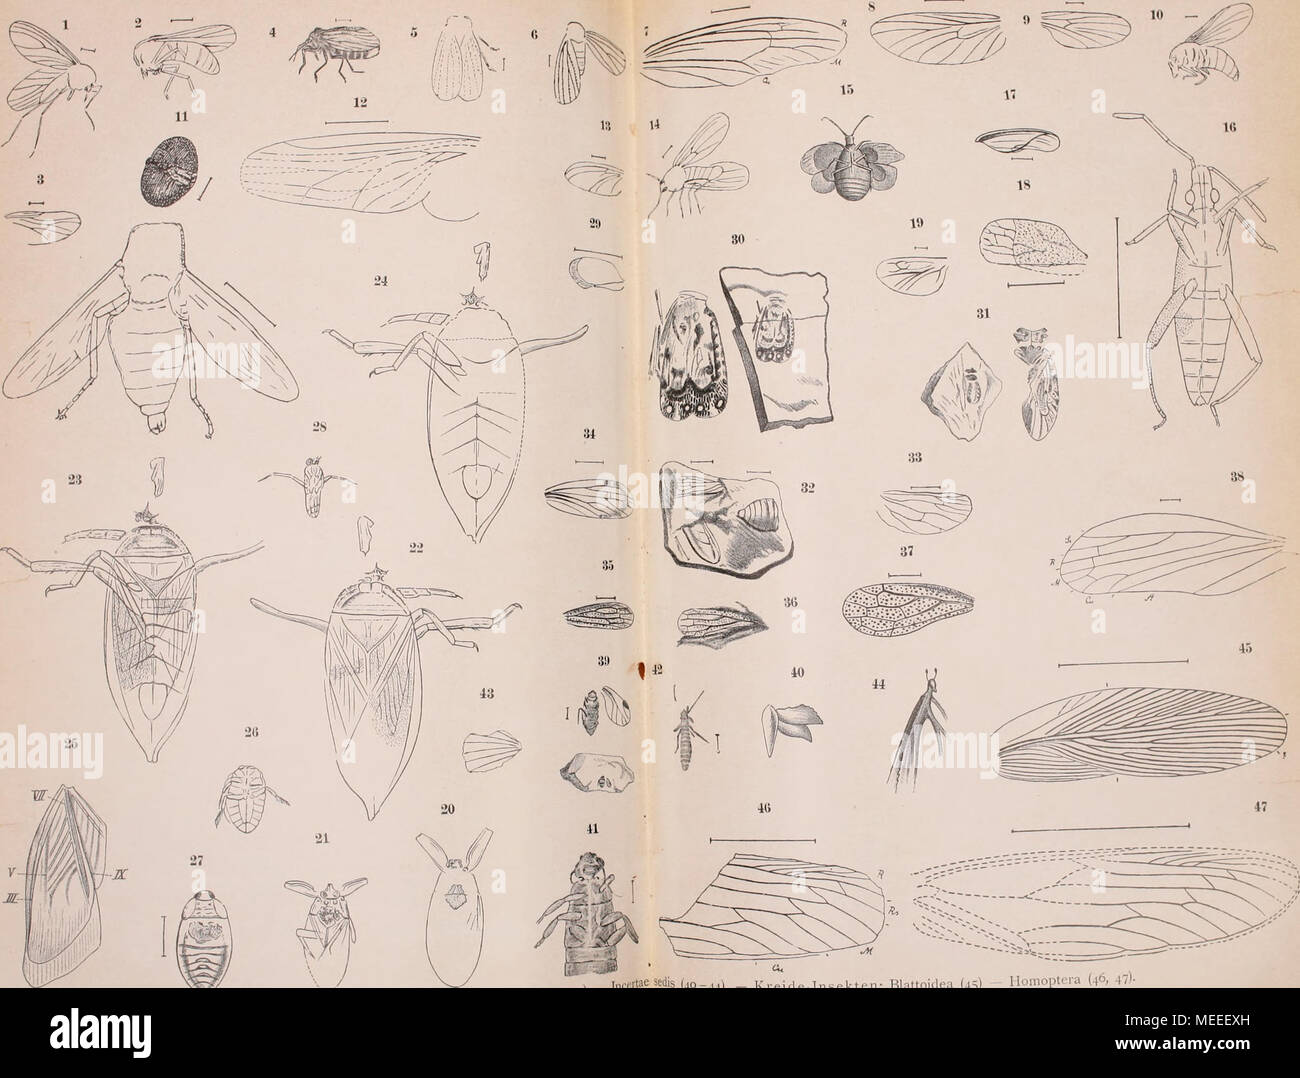 . Die fossilen insekten und die phylogenie der rezenten formen; ein handbuch für paläontologen und zoologen . Jura insekten: Diptera (1-14) - Hemiptem (15-29) - Honioptera (30 J l,,,,t;ieäedis (40-44).   Kreide Insekten: Blattoidea (45) -- Honioptera (46, 47)- -i^^ Stock Photo